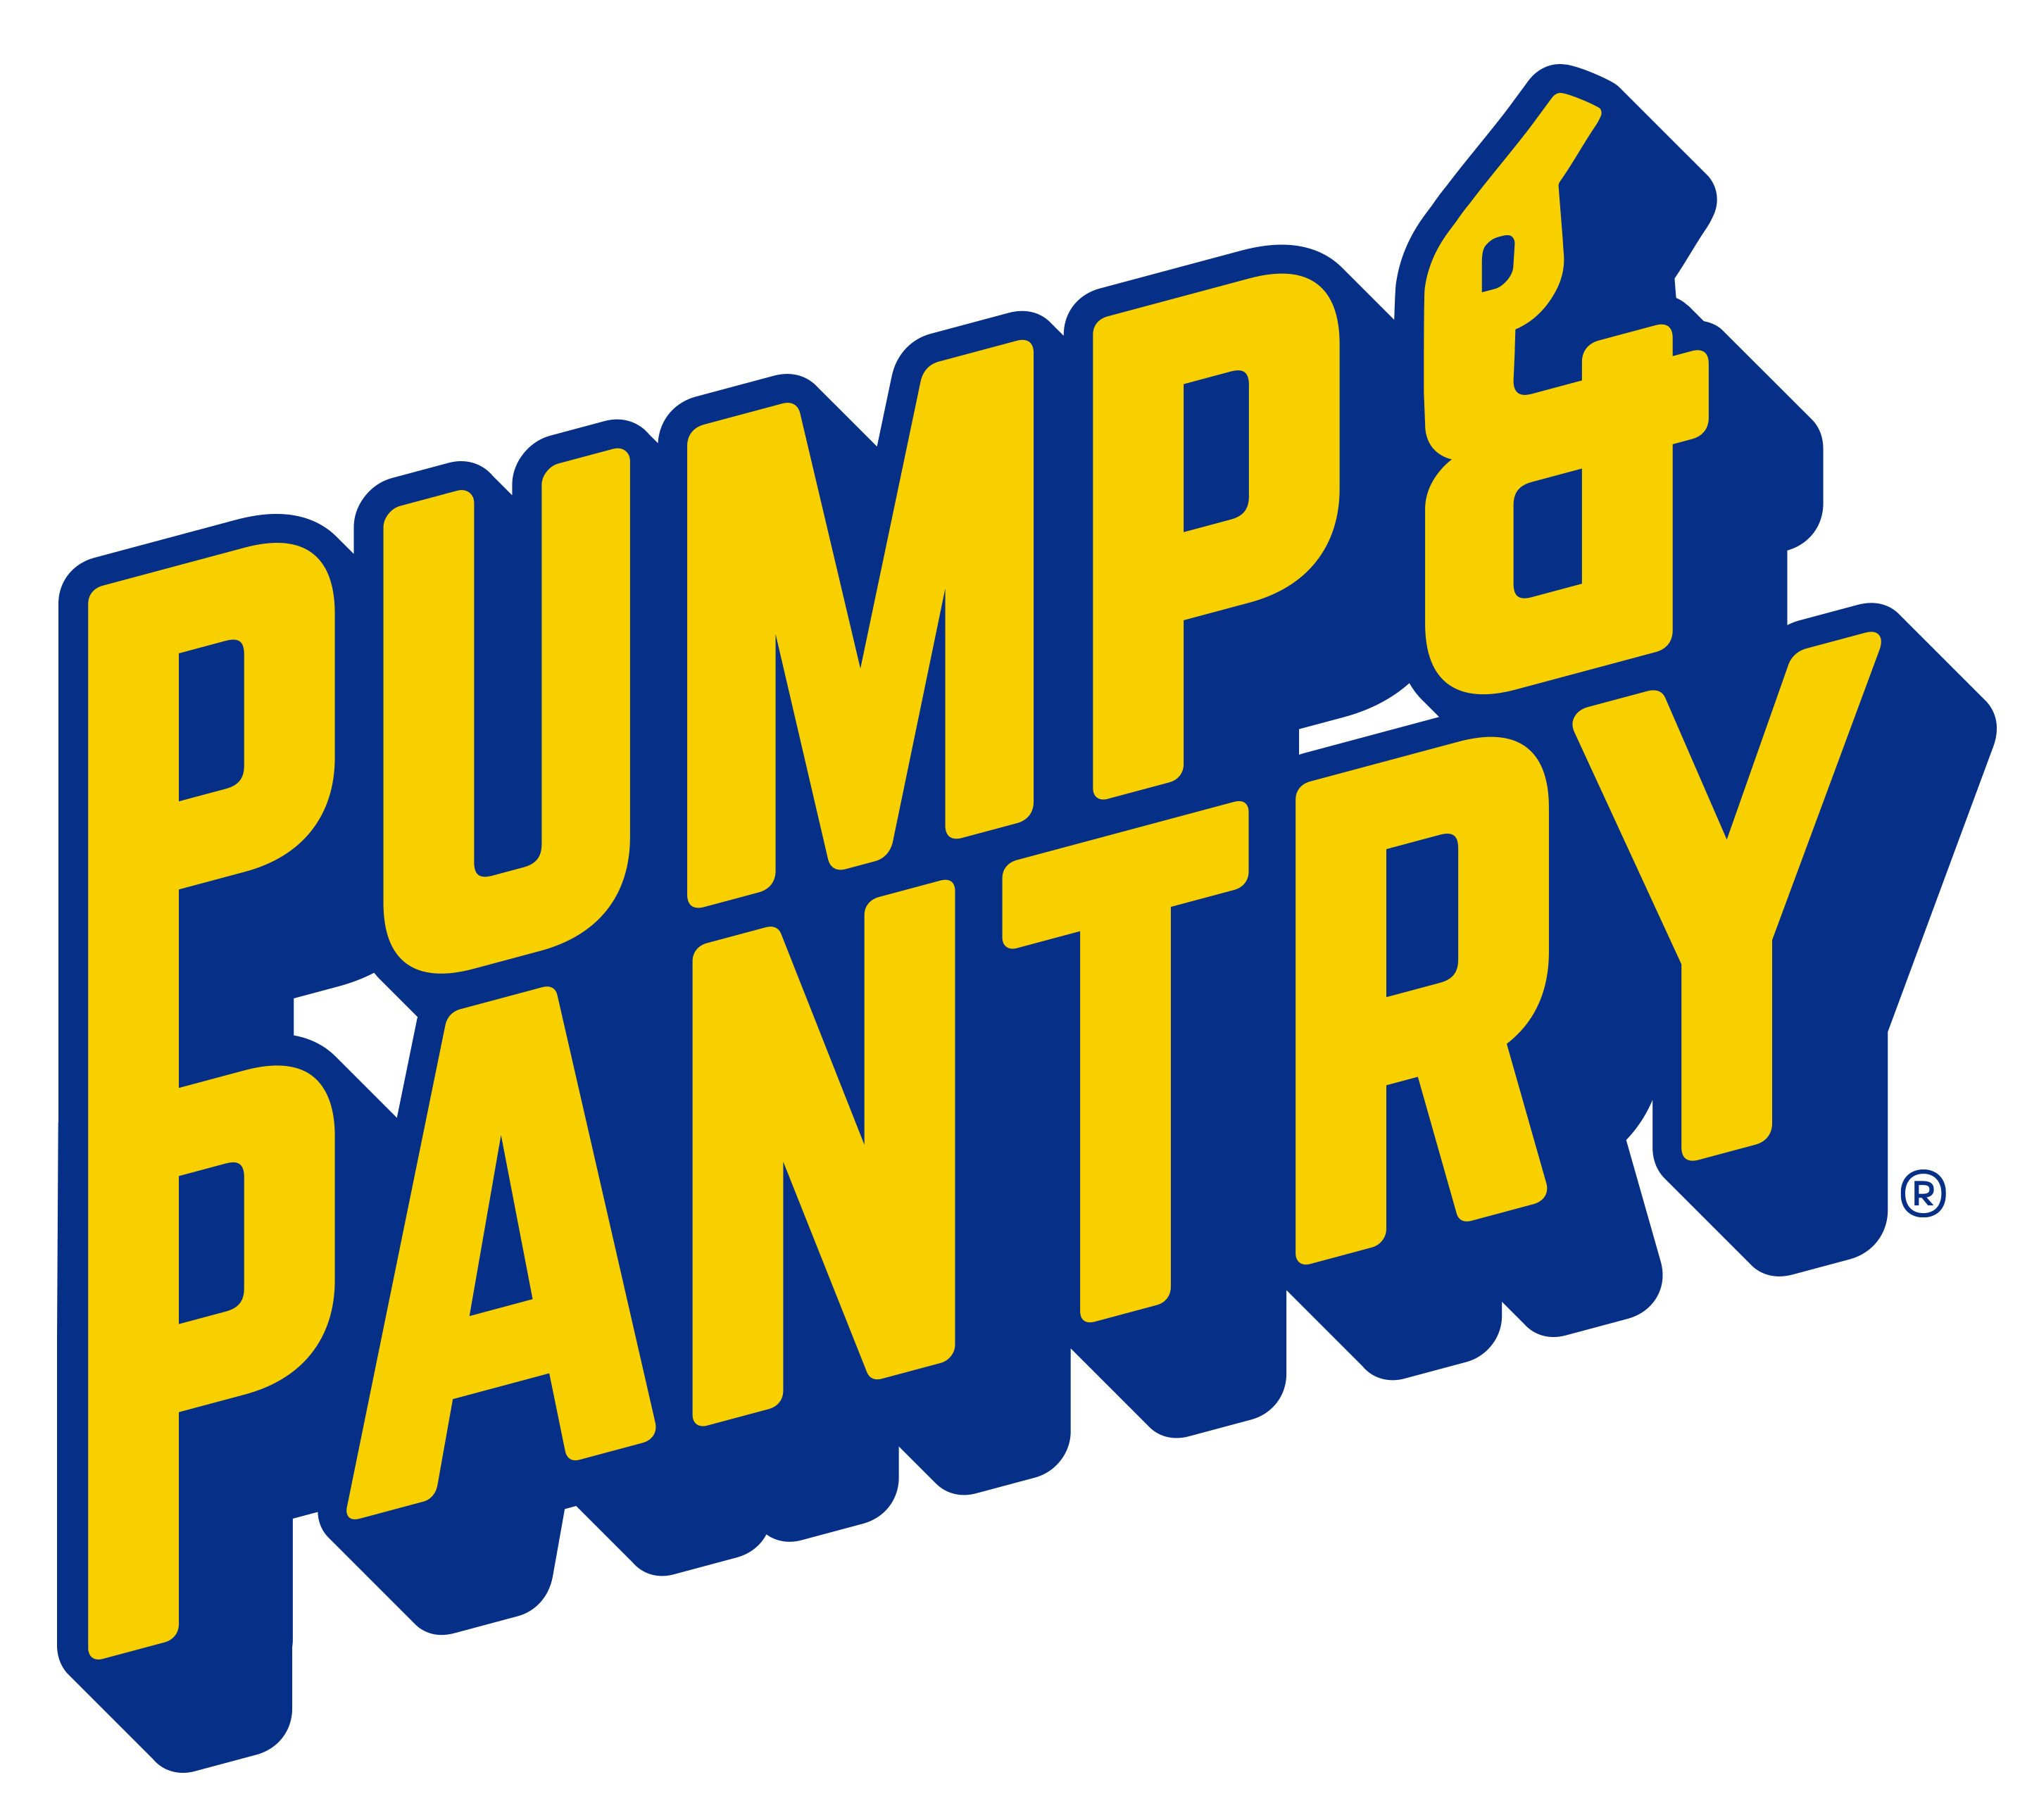 Pump & Pantry